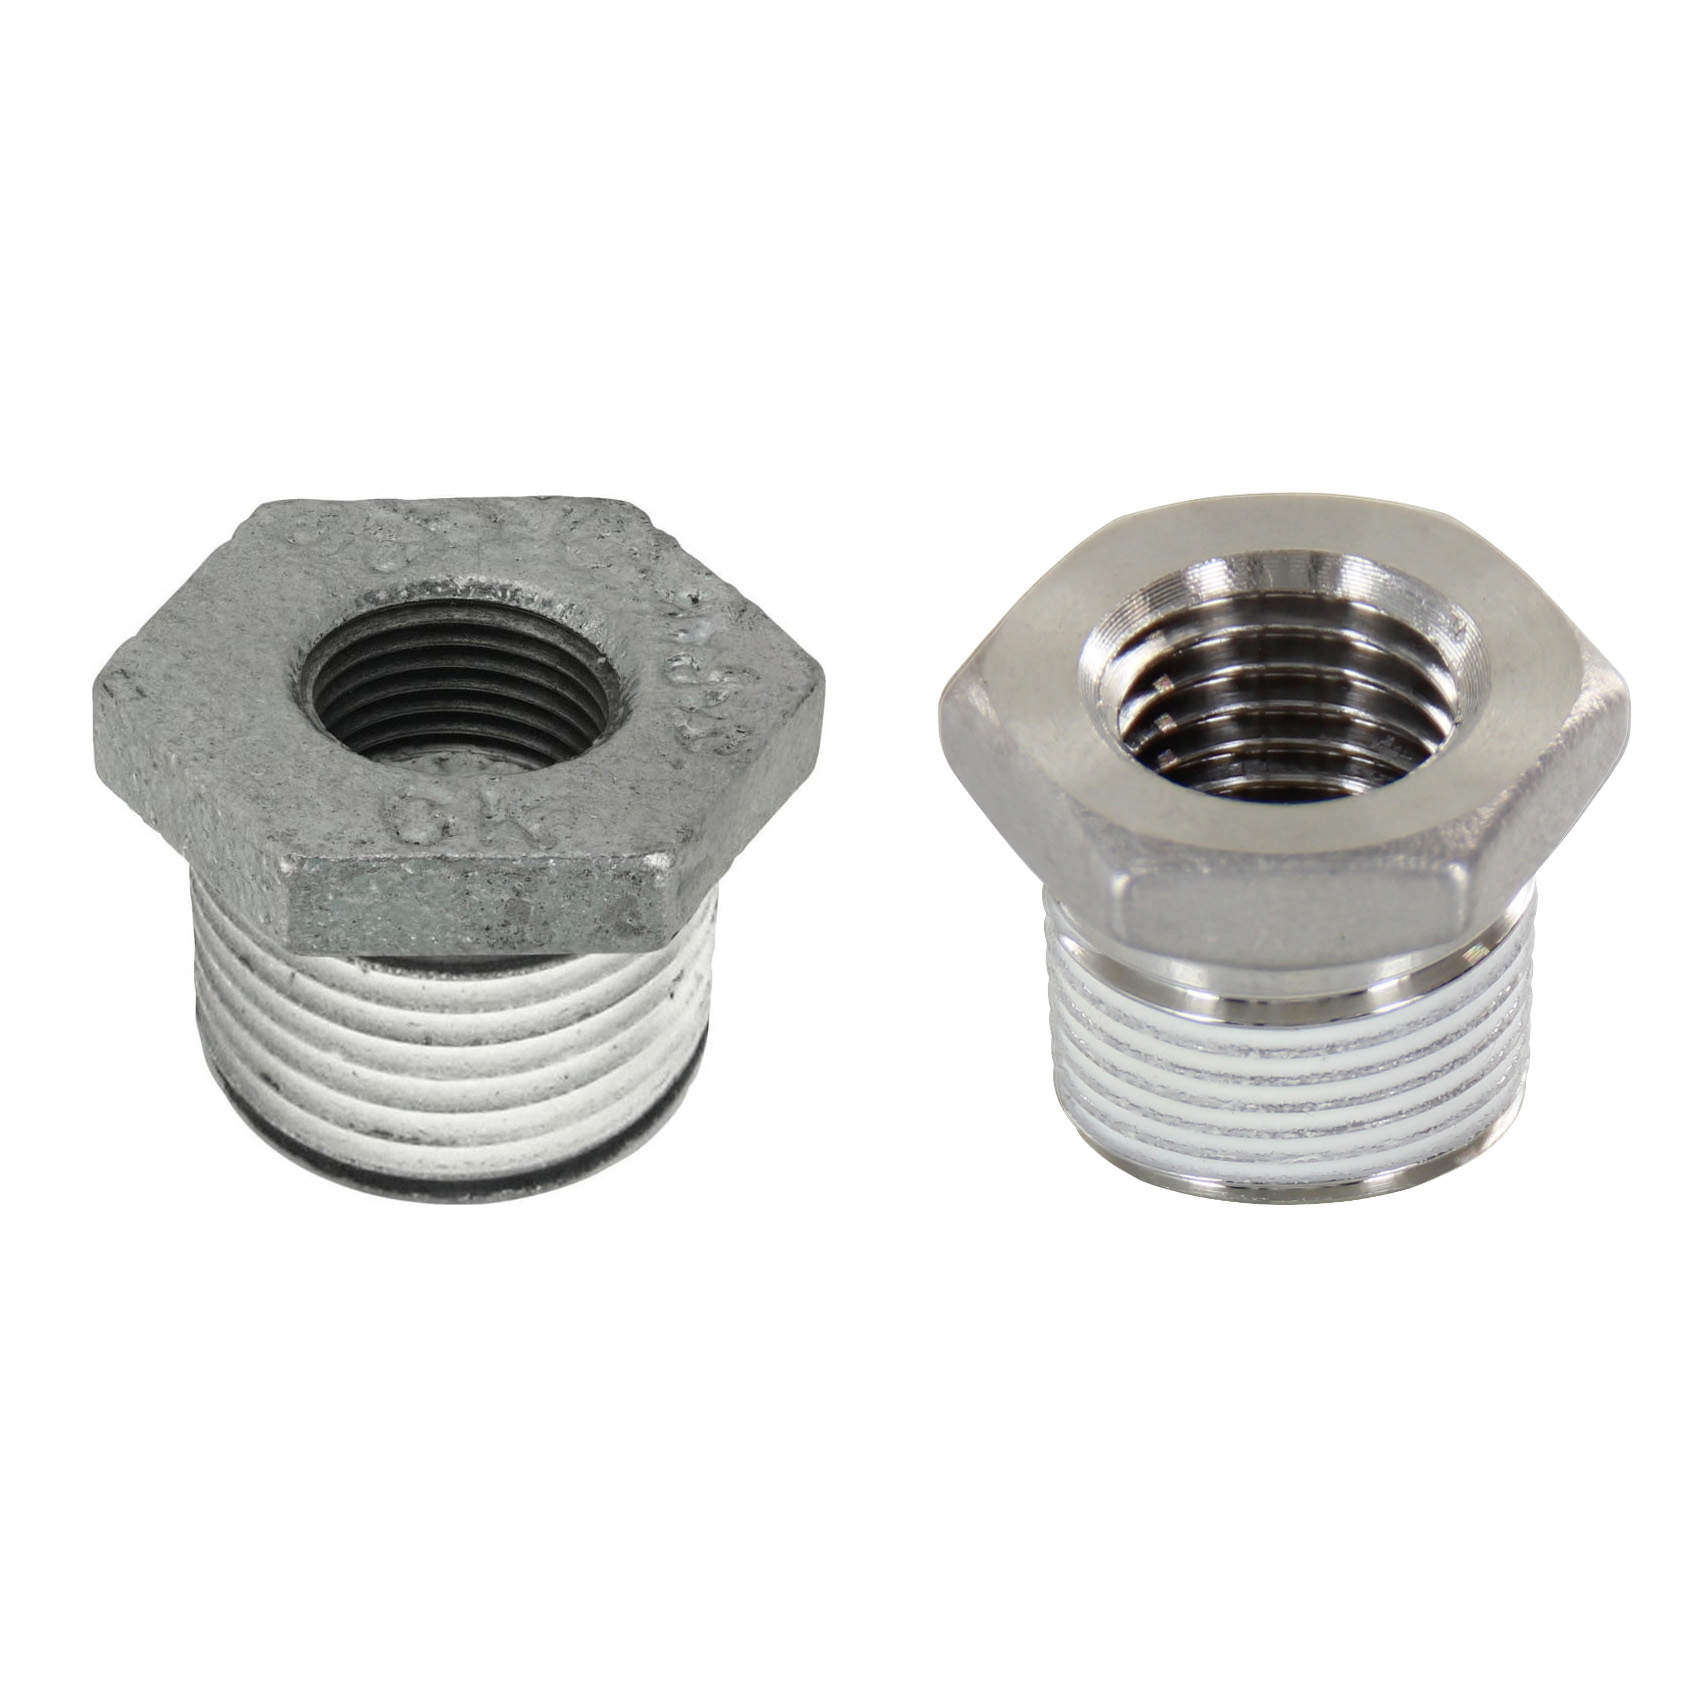 Low Pressure Screw Fittings - Thread Coated Type - Steel Pipe Fittings - Bushings SGCPB36